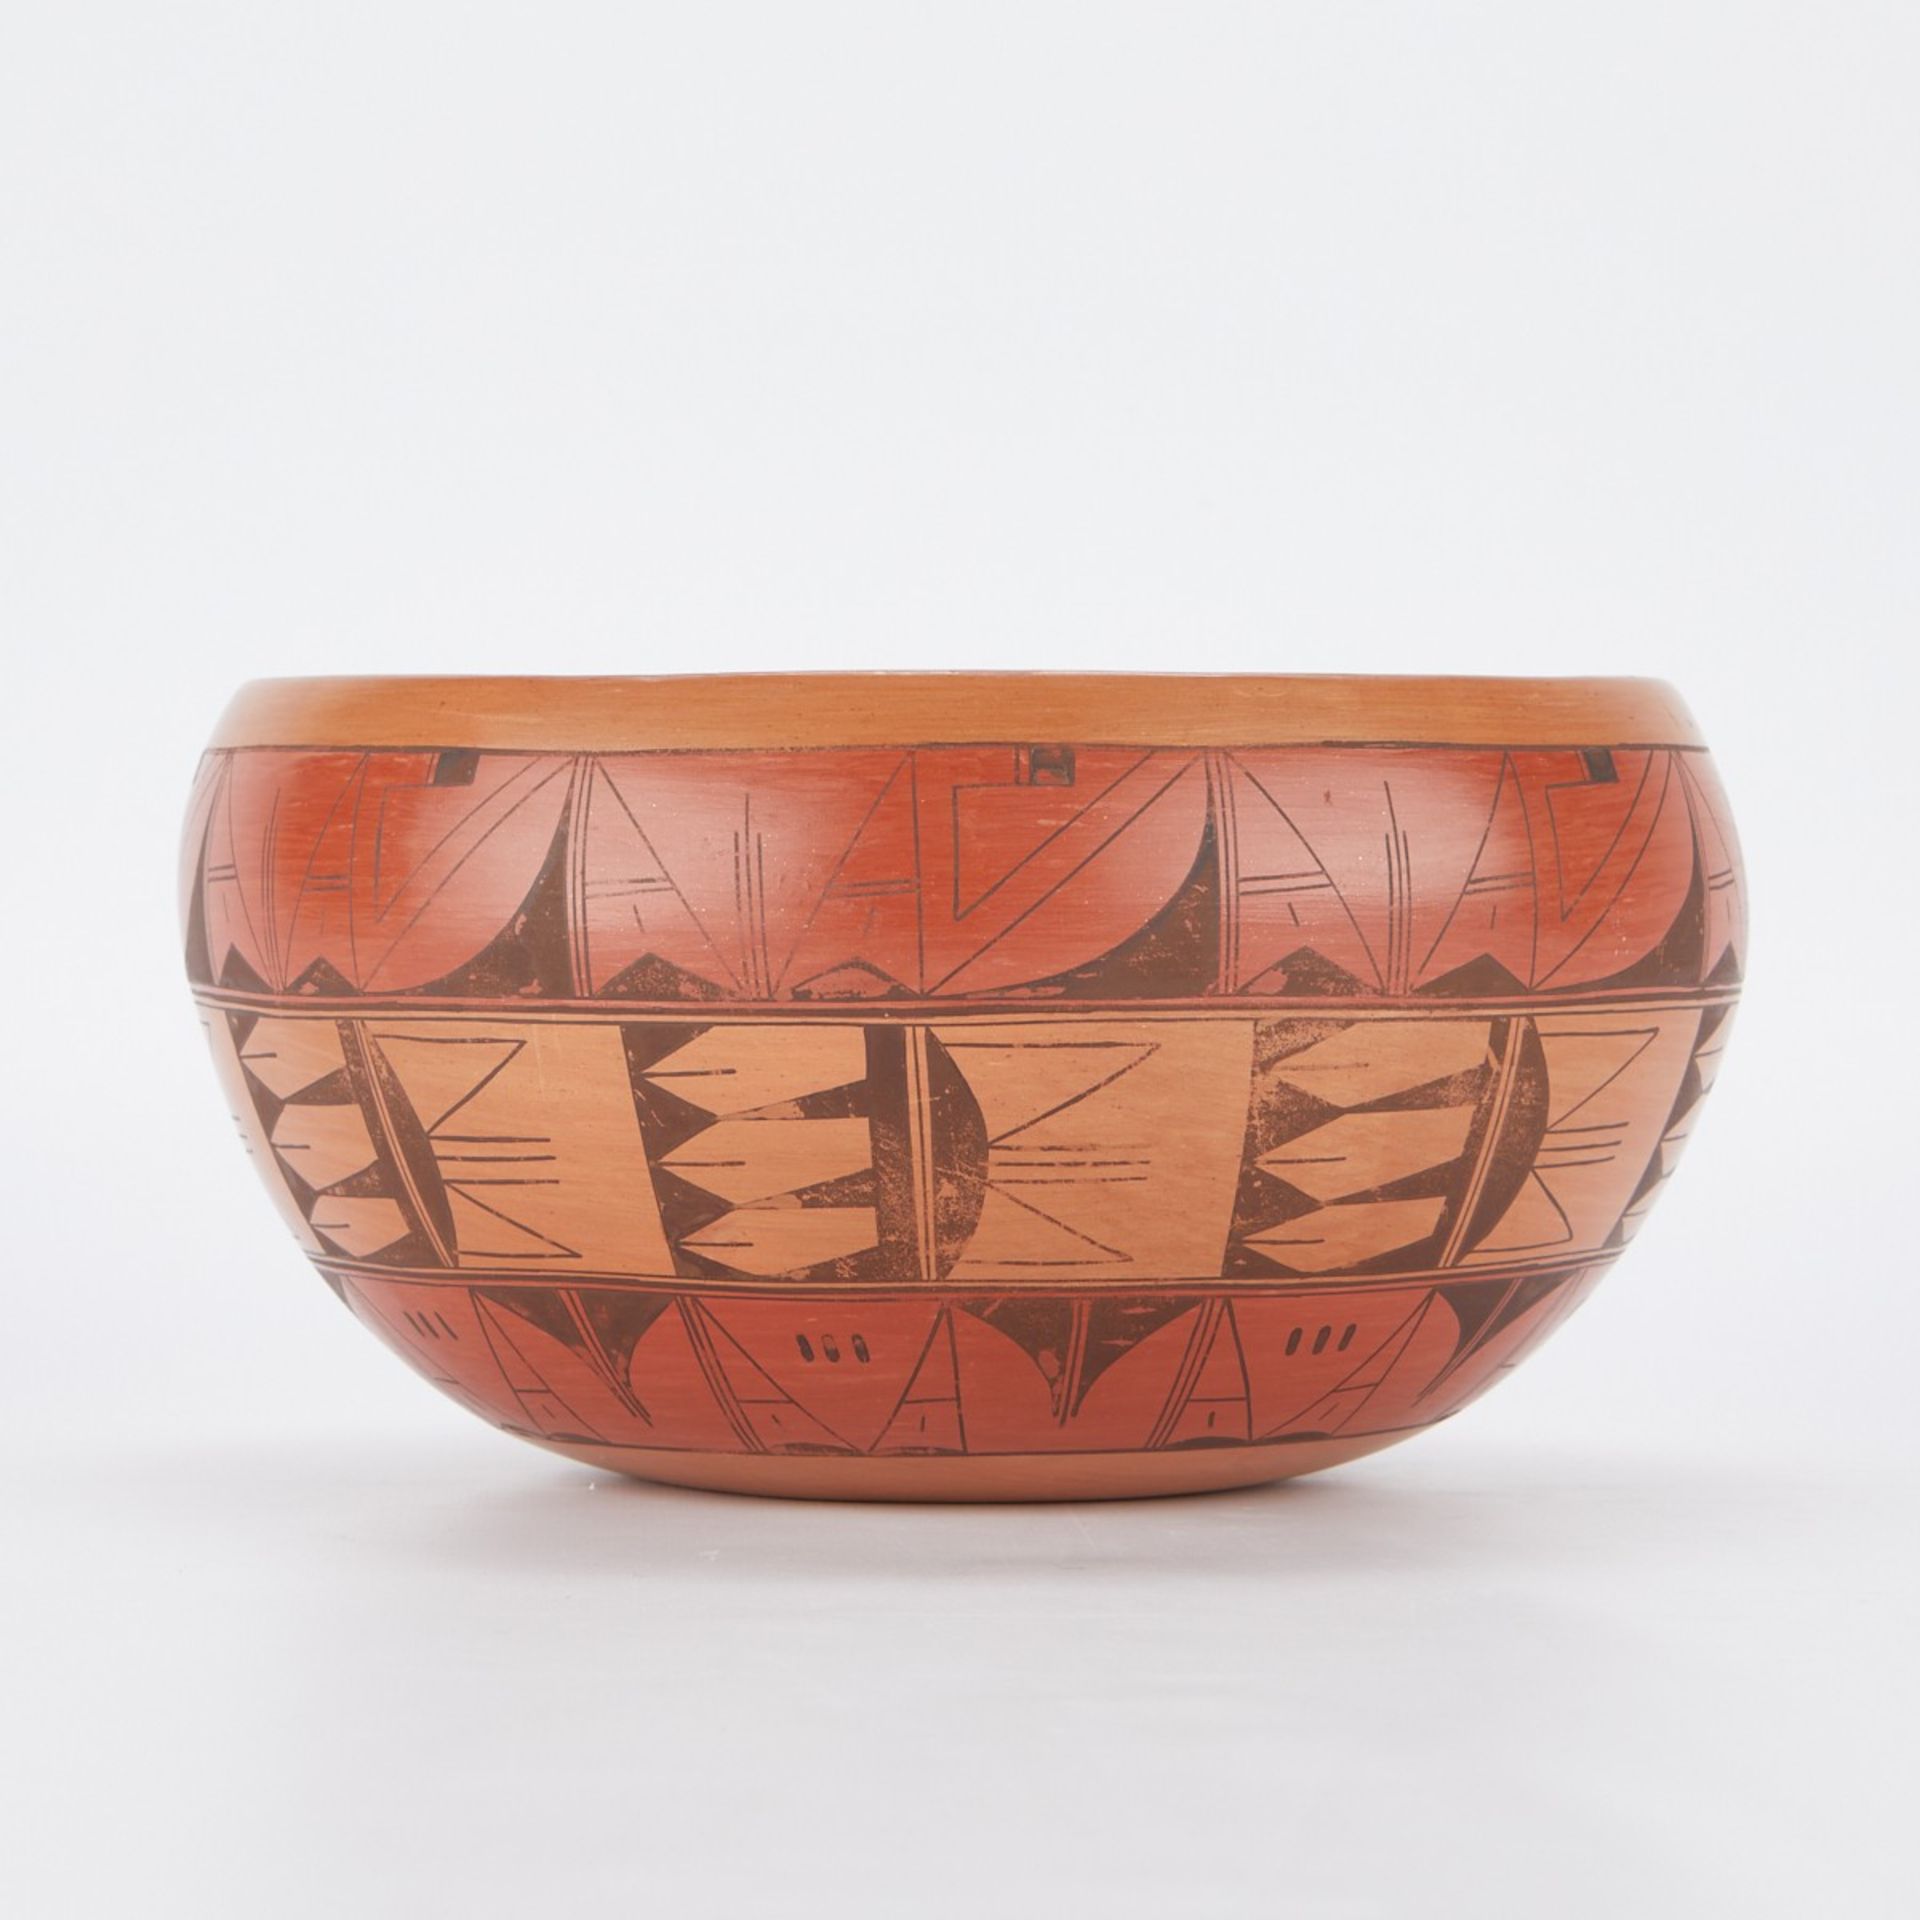 Fannie L. Polacca "Nampeyo" Hopi Pottery Bowl